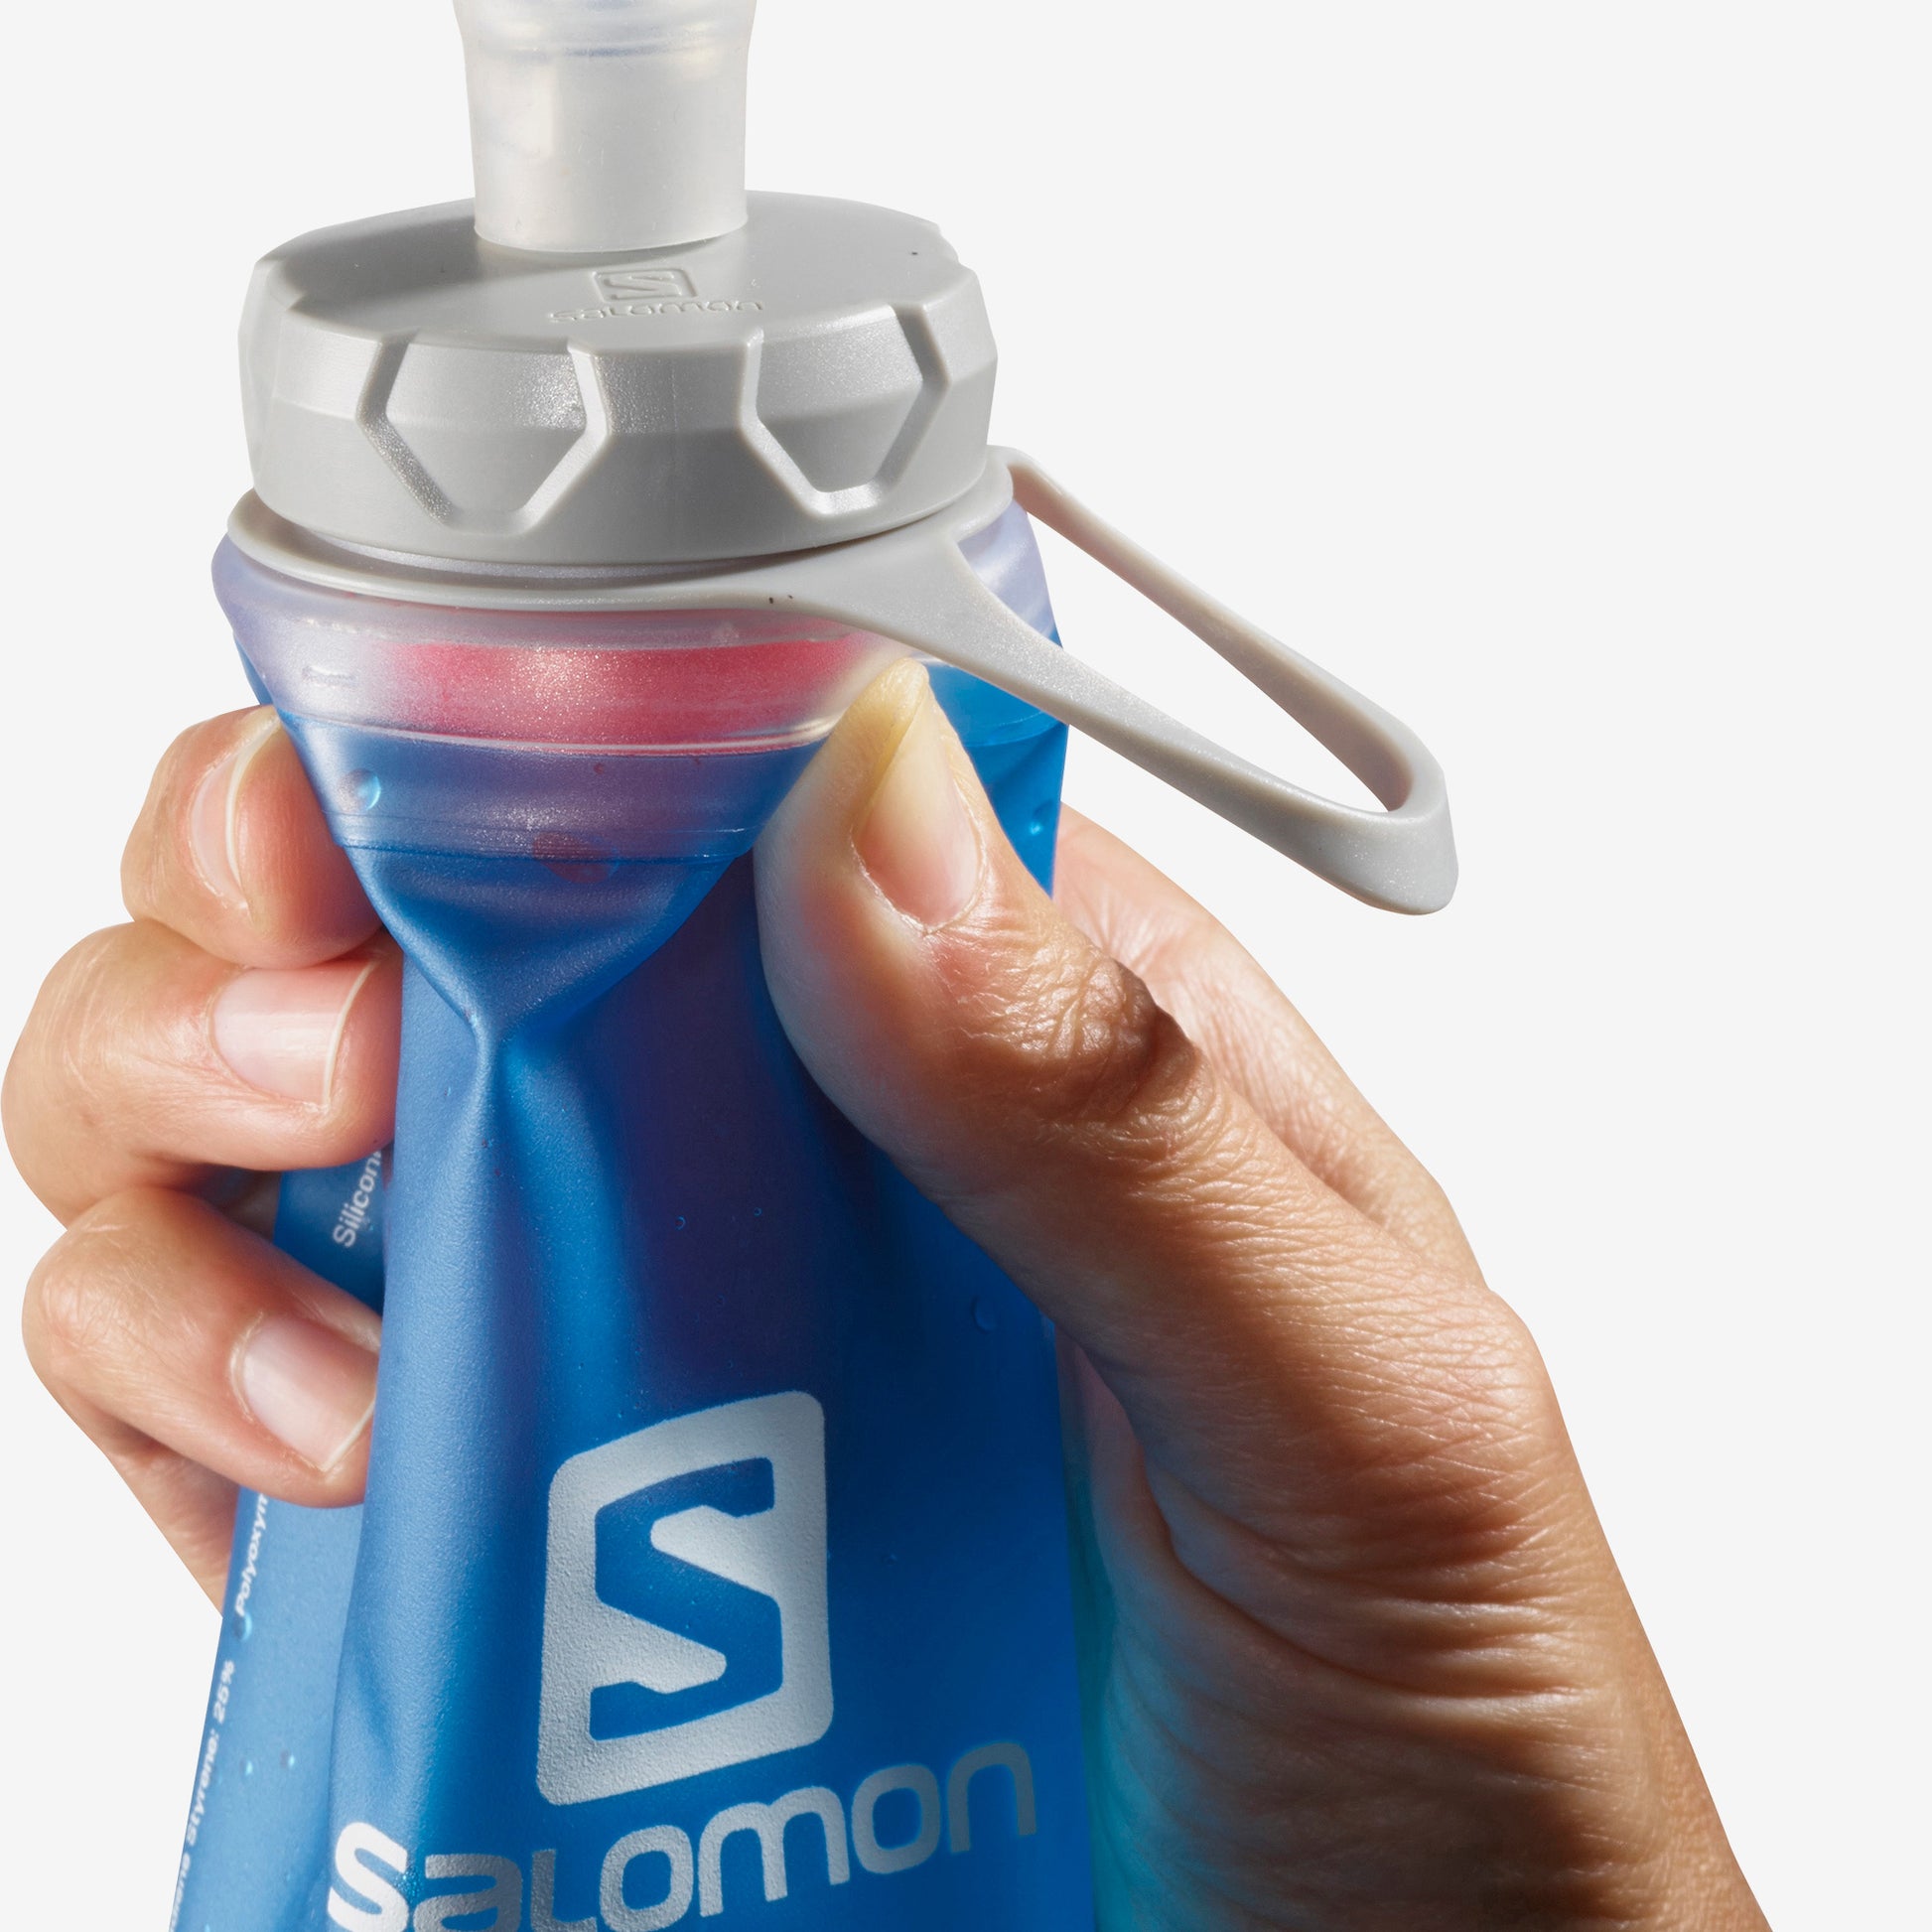 Soft Flask Water Bottle - 16 oz